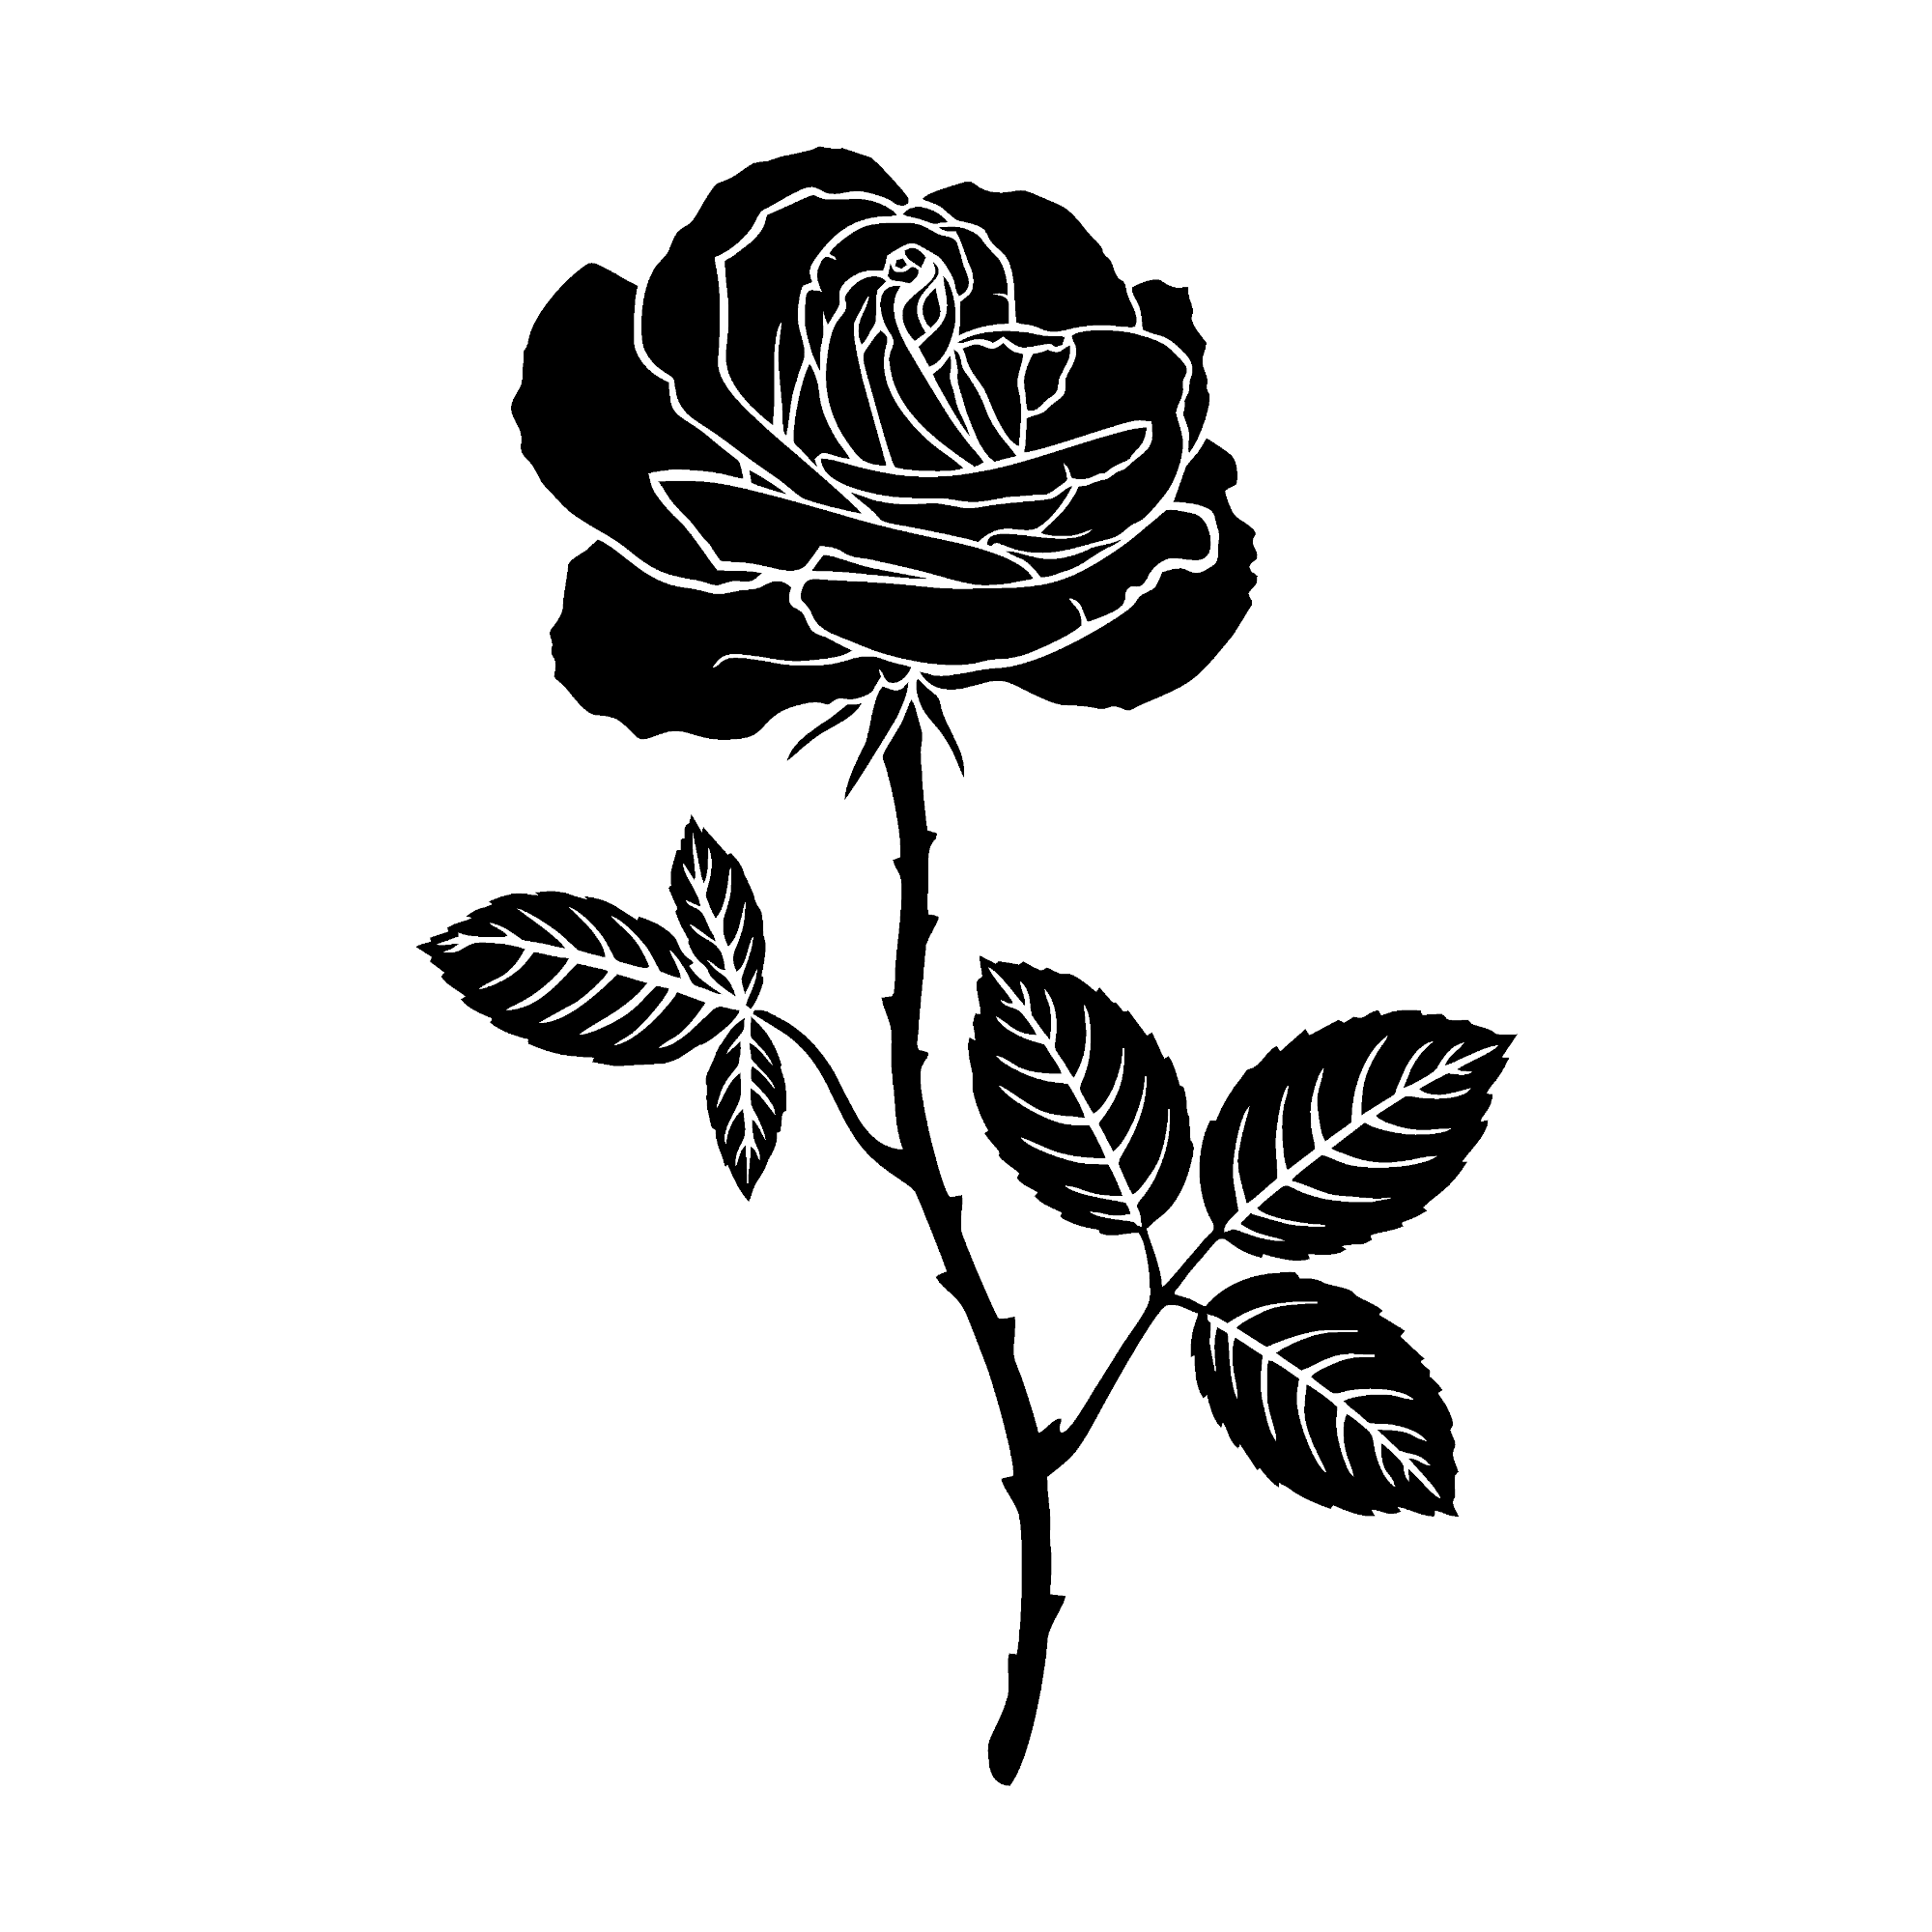 Schwarze Rose mit Dornen